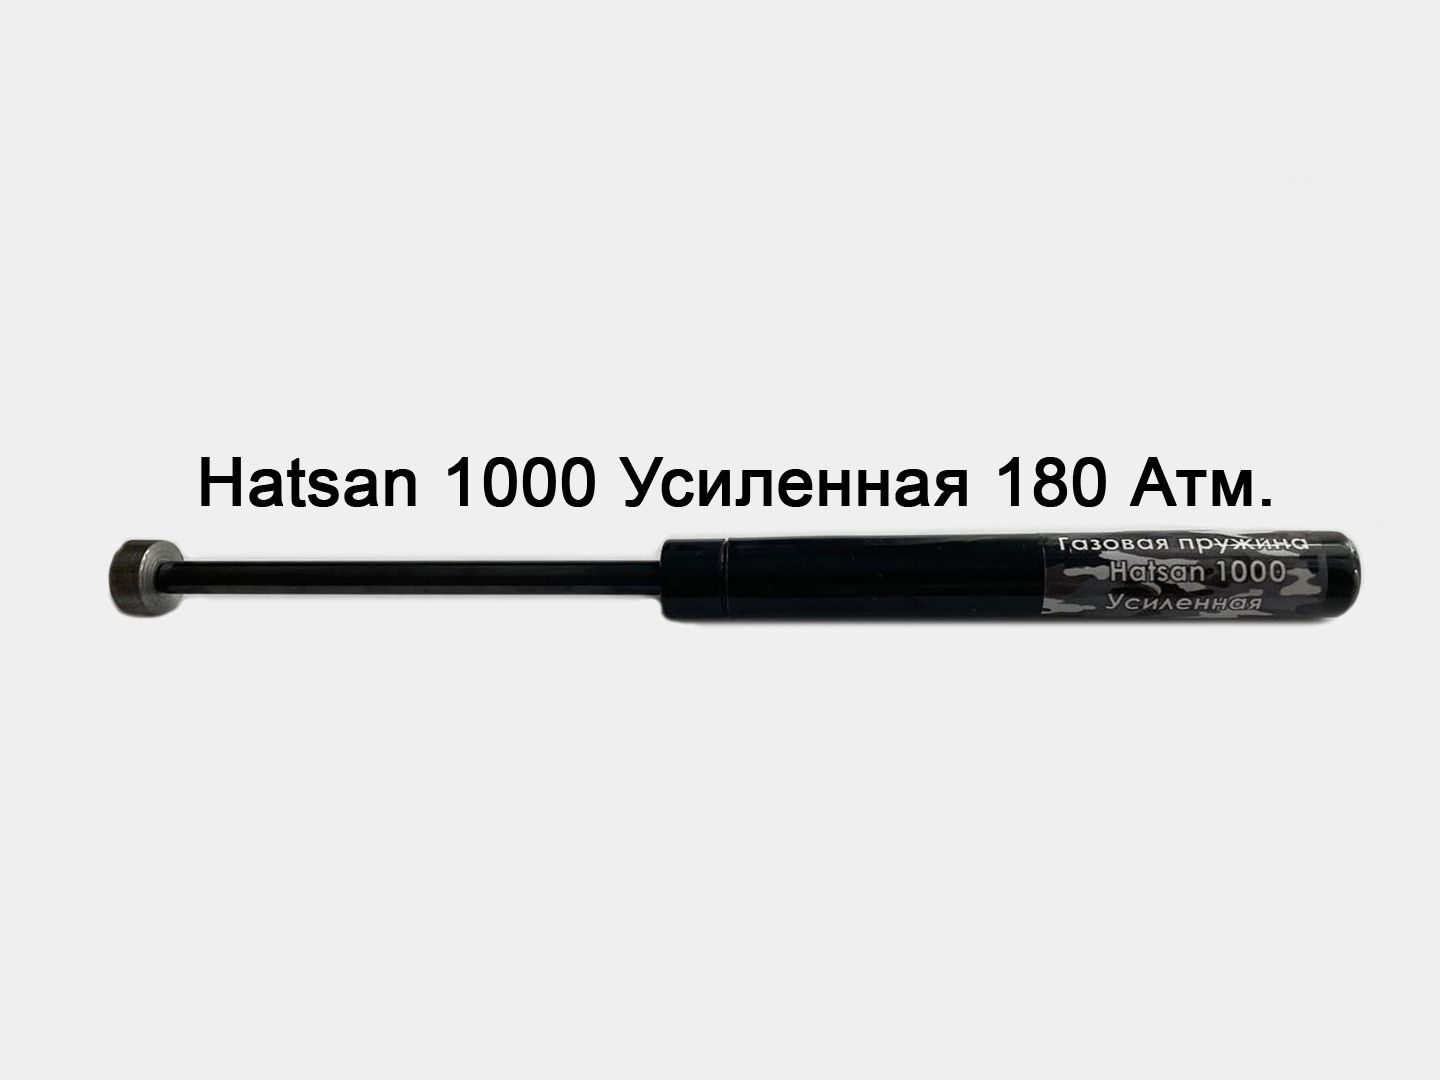 Газовая пружина для Hatsan 1000s. Газовая пружина для Hatsan AIRTACT ed от vado123. Hatsan Striker Alpha газовая пружина 170. Газовая пружина Хатсан 33.